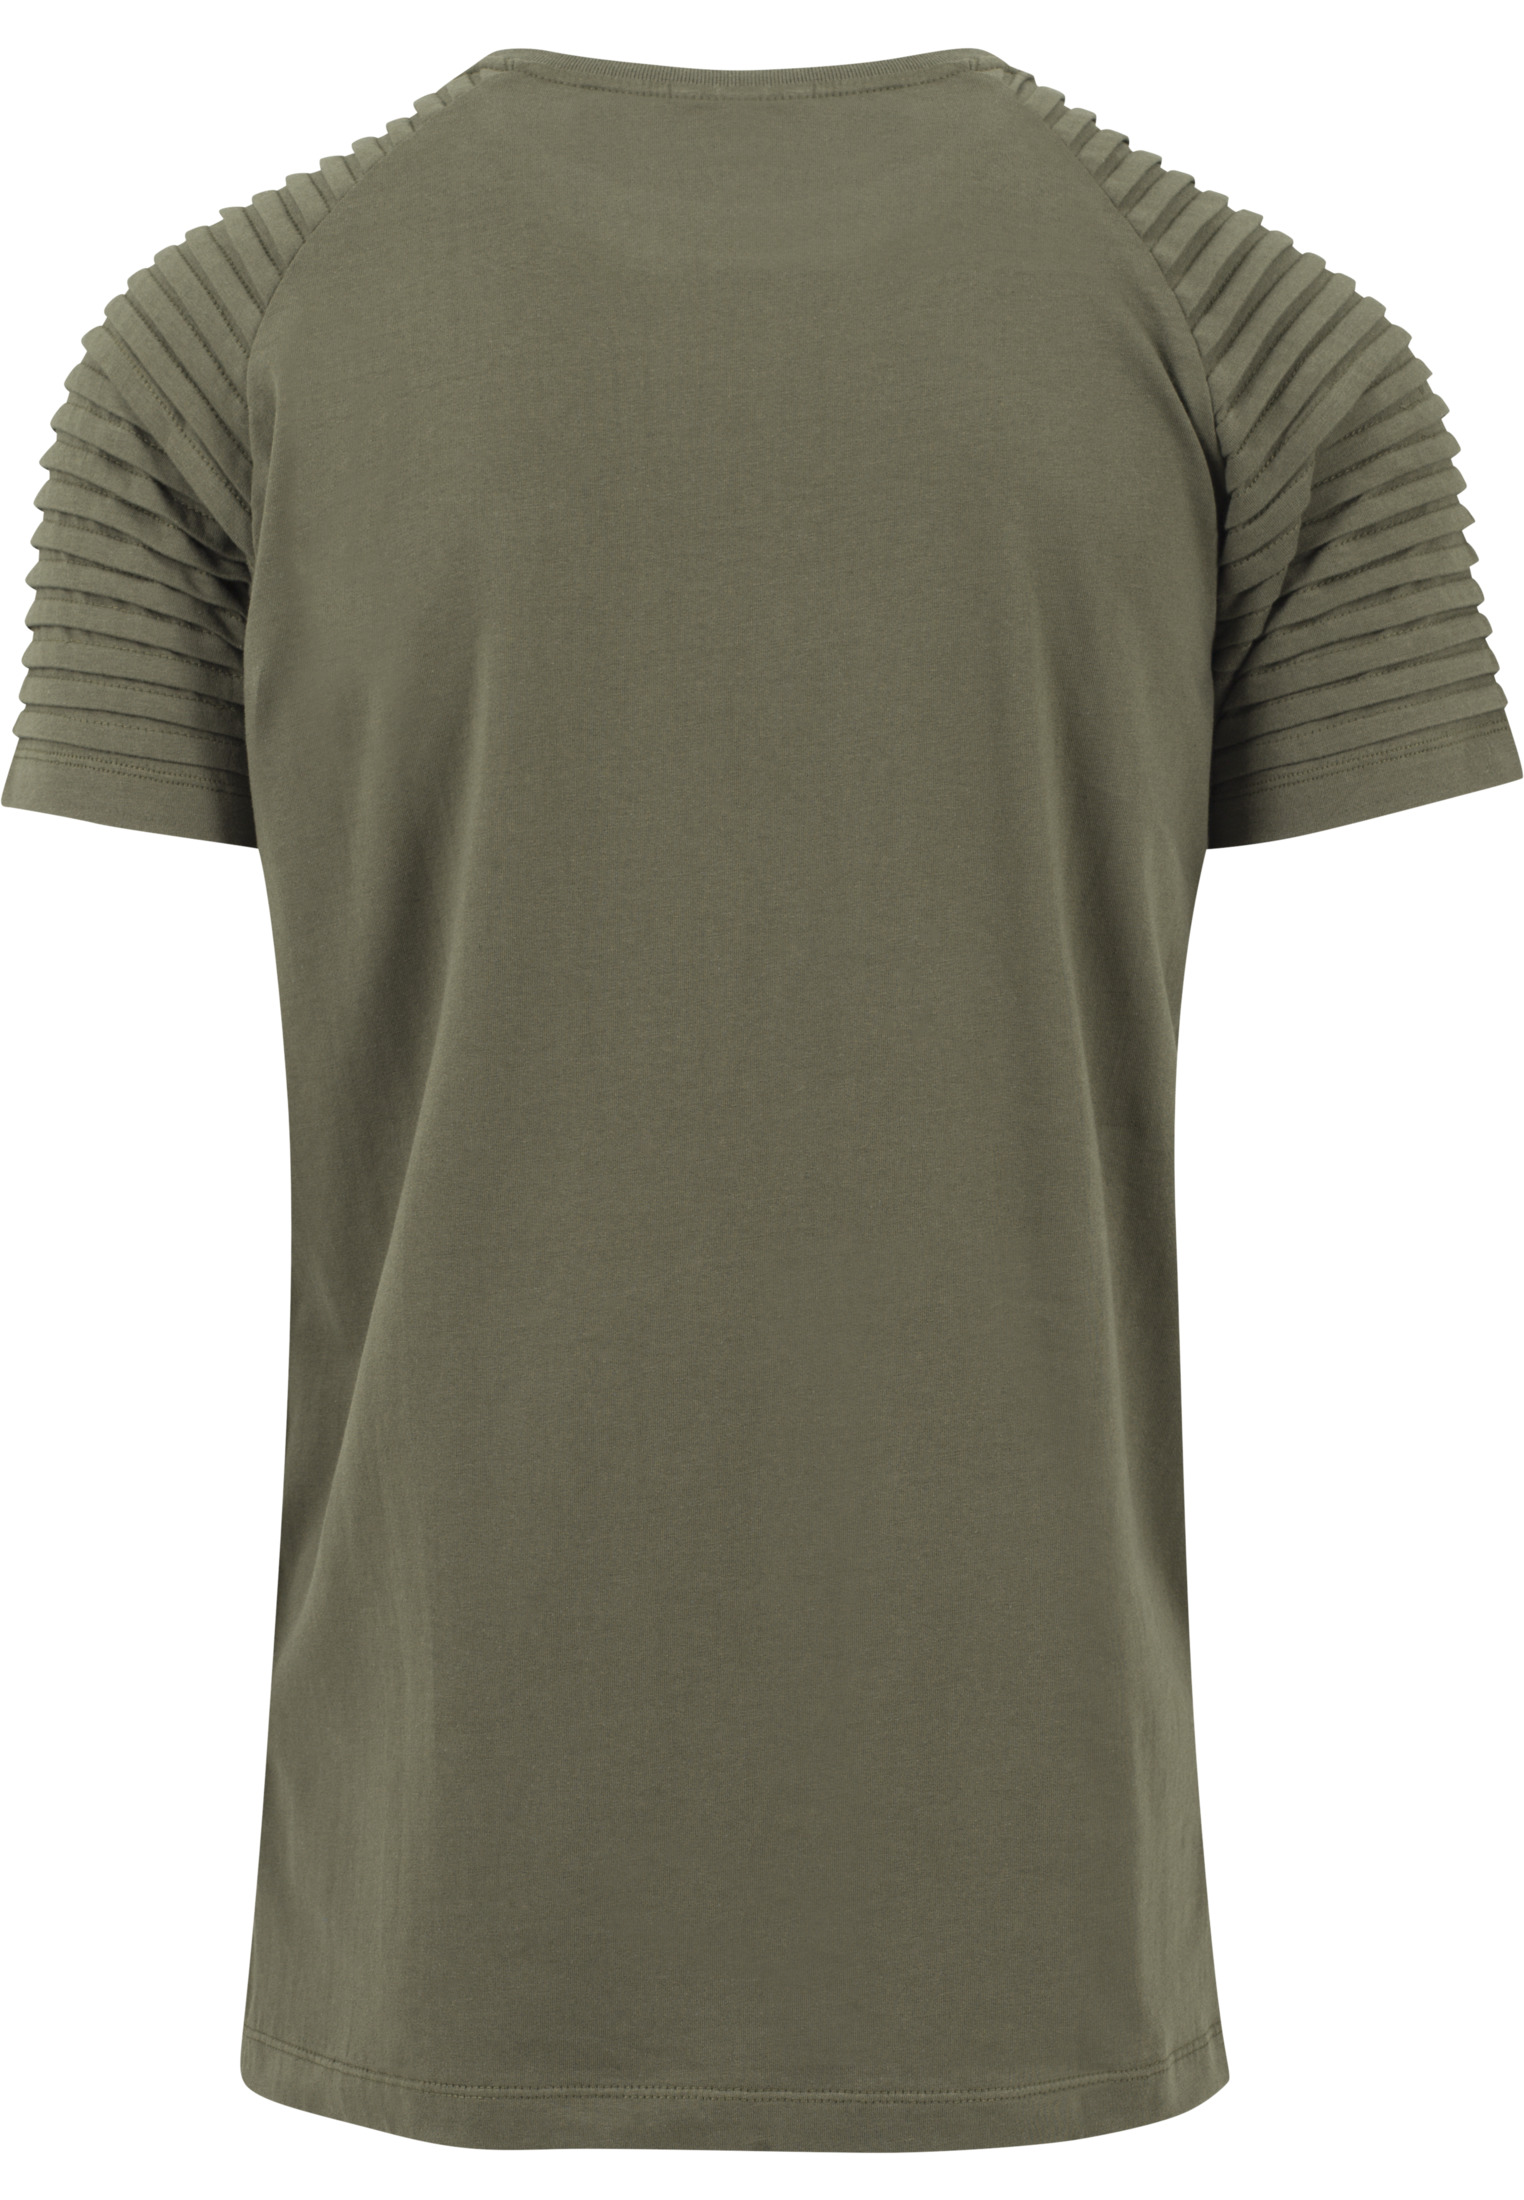 T-Shirts Pleat Raglan Tee in Farbe olive